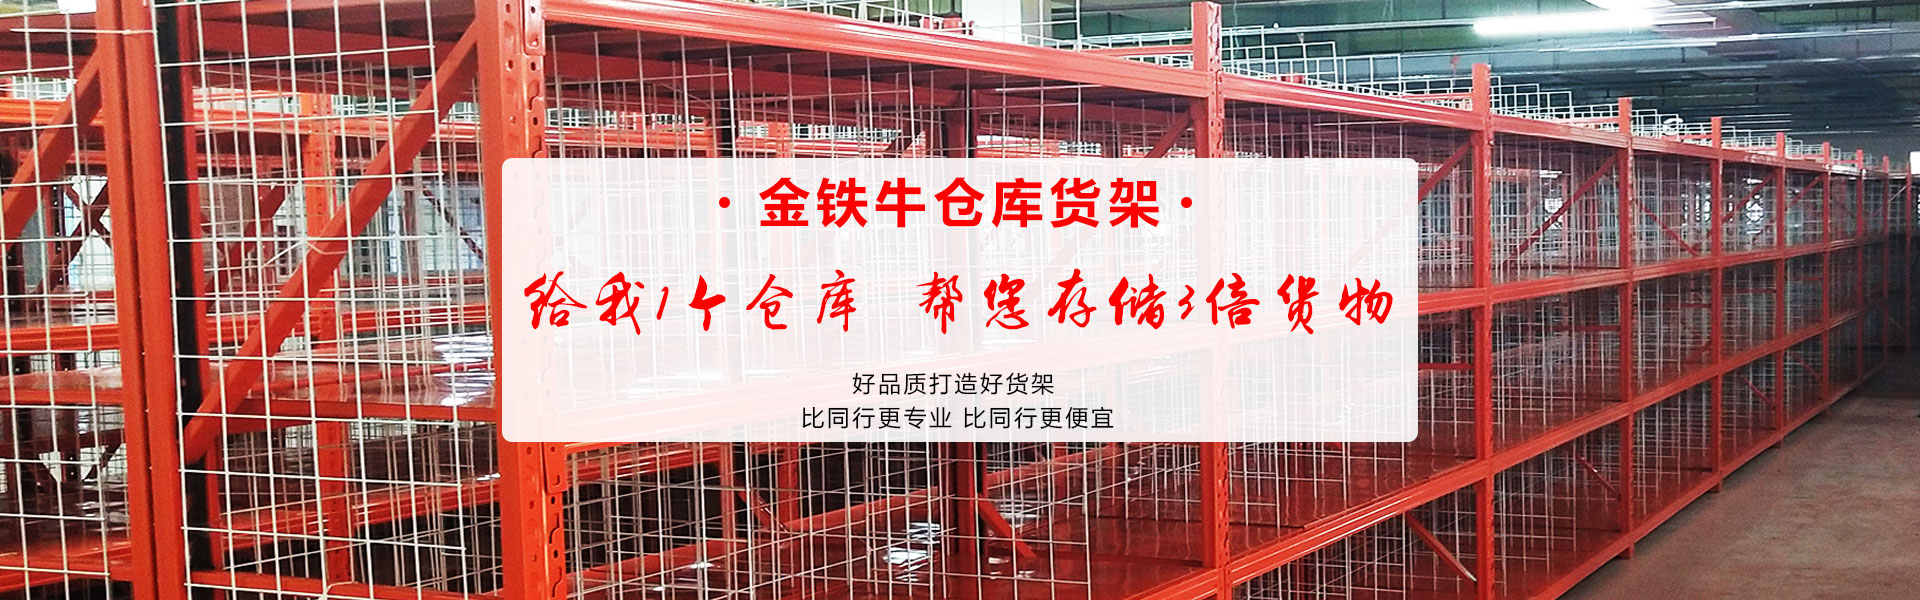 广州金铁牛货可以生产各类仓库货架和层货架标准架